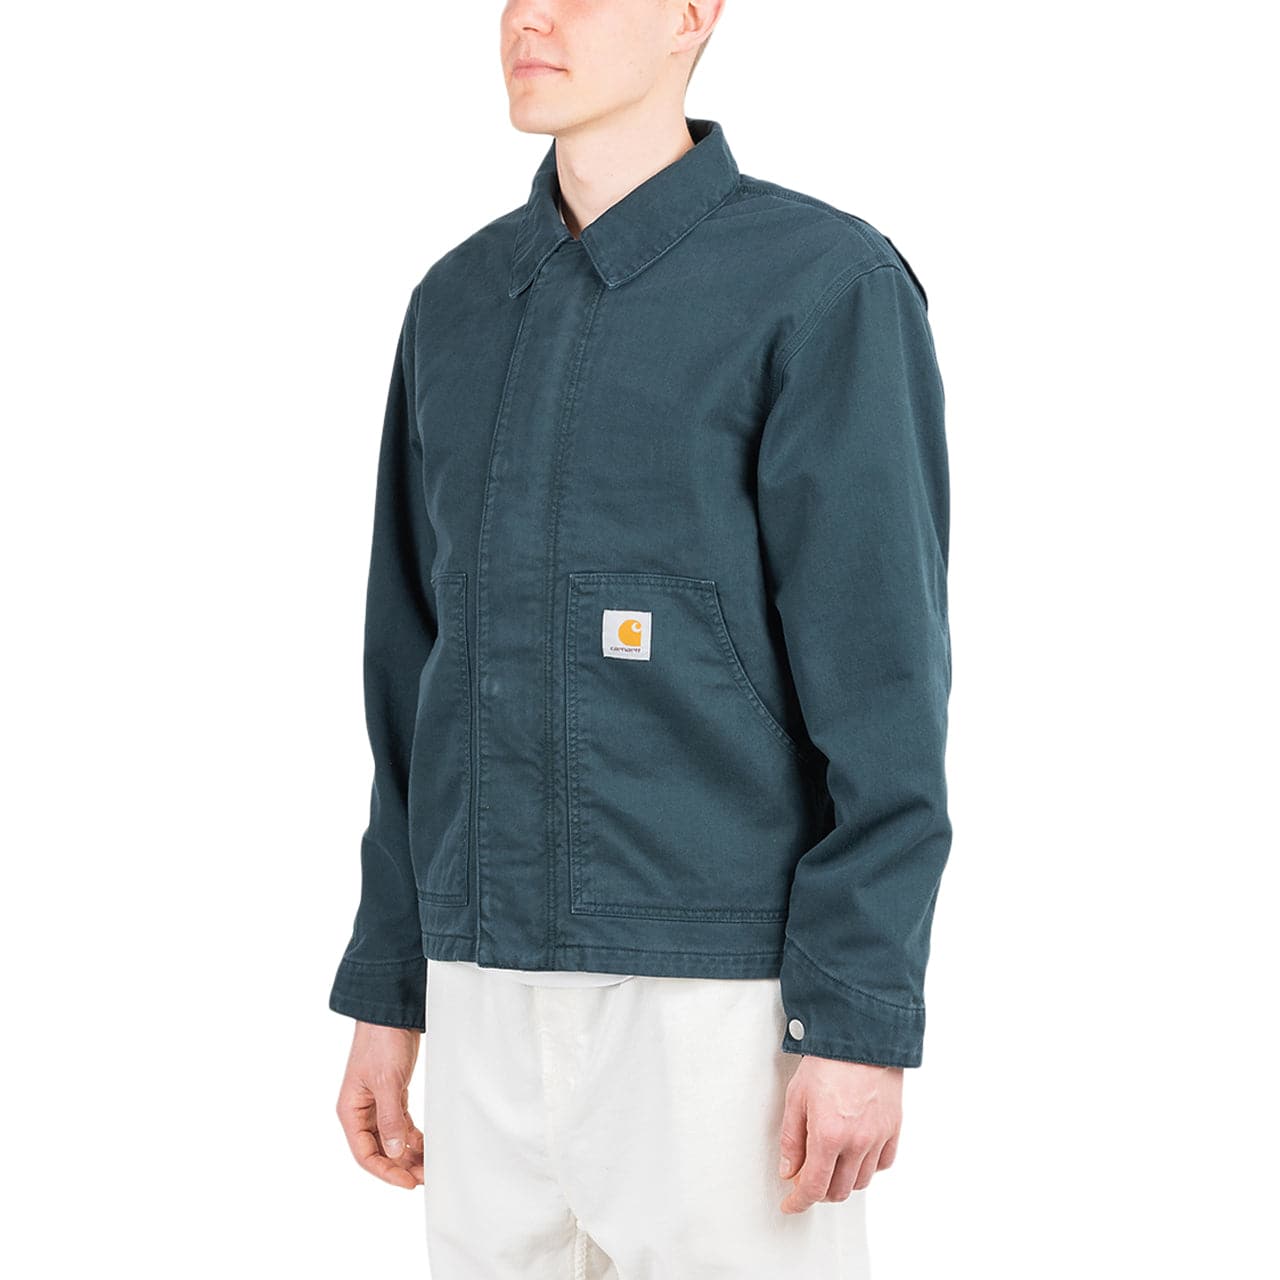 Carhartt WIP Arcan Jacket (Green)